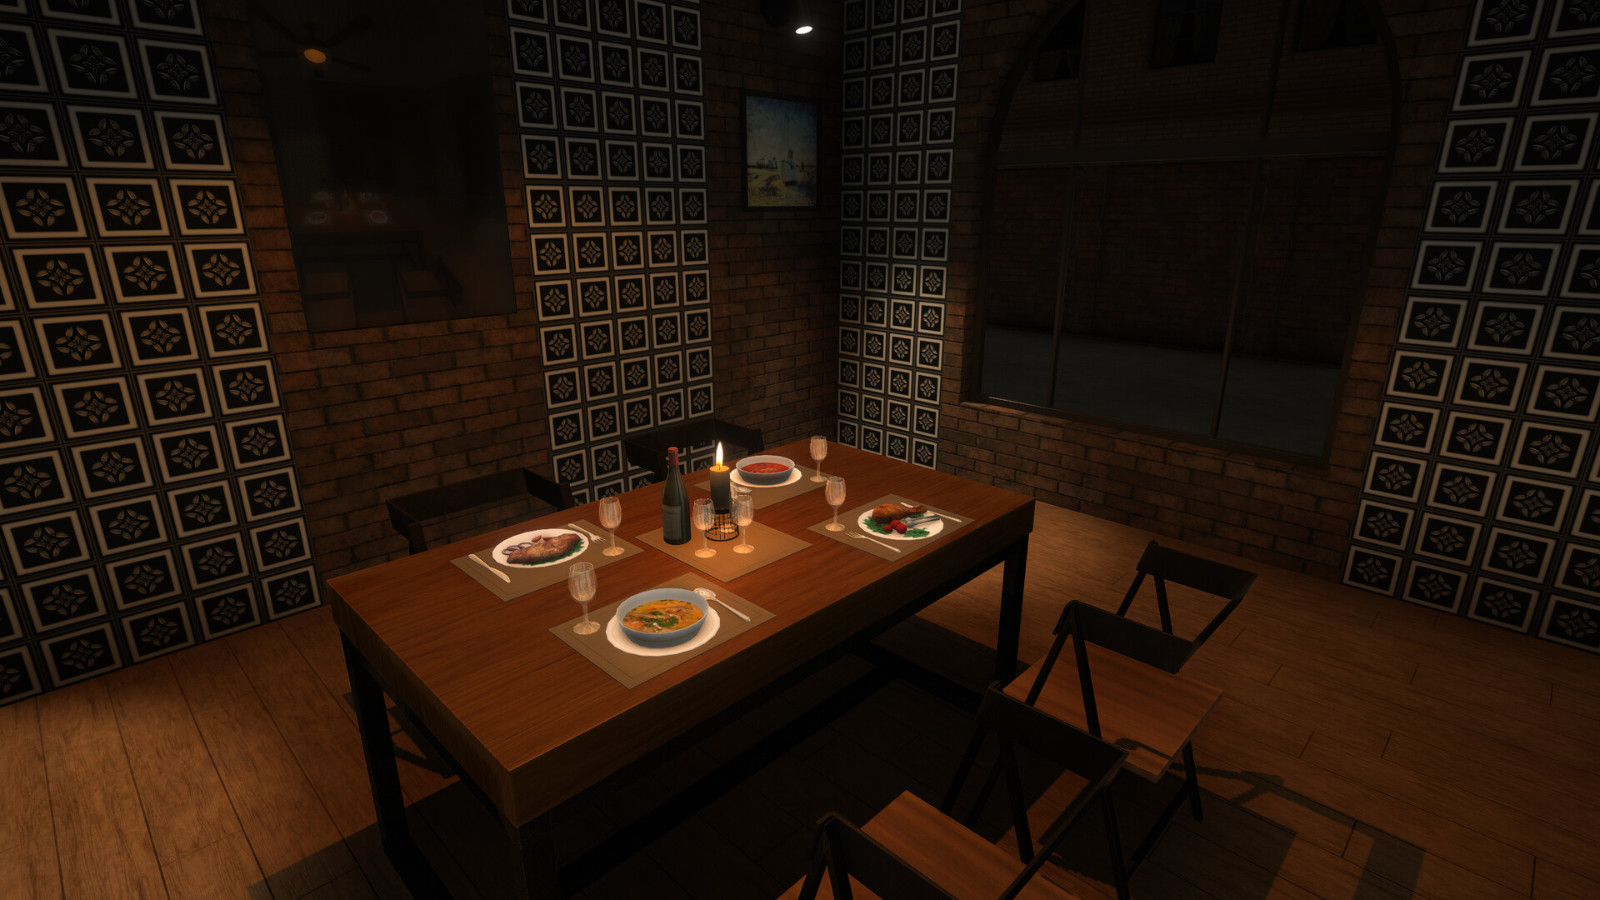 模拟建造游戏《餐馆建造者》Steam页面上线 支持简中 二次世界 第14张